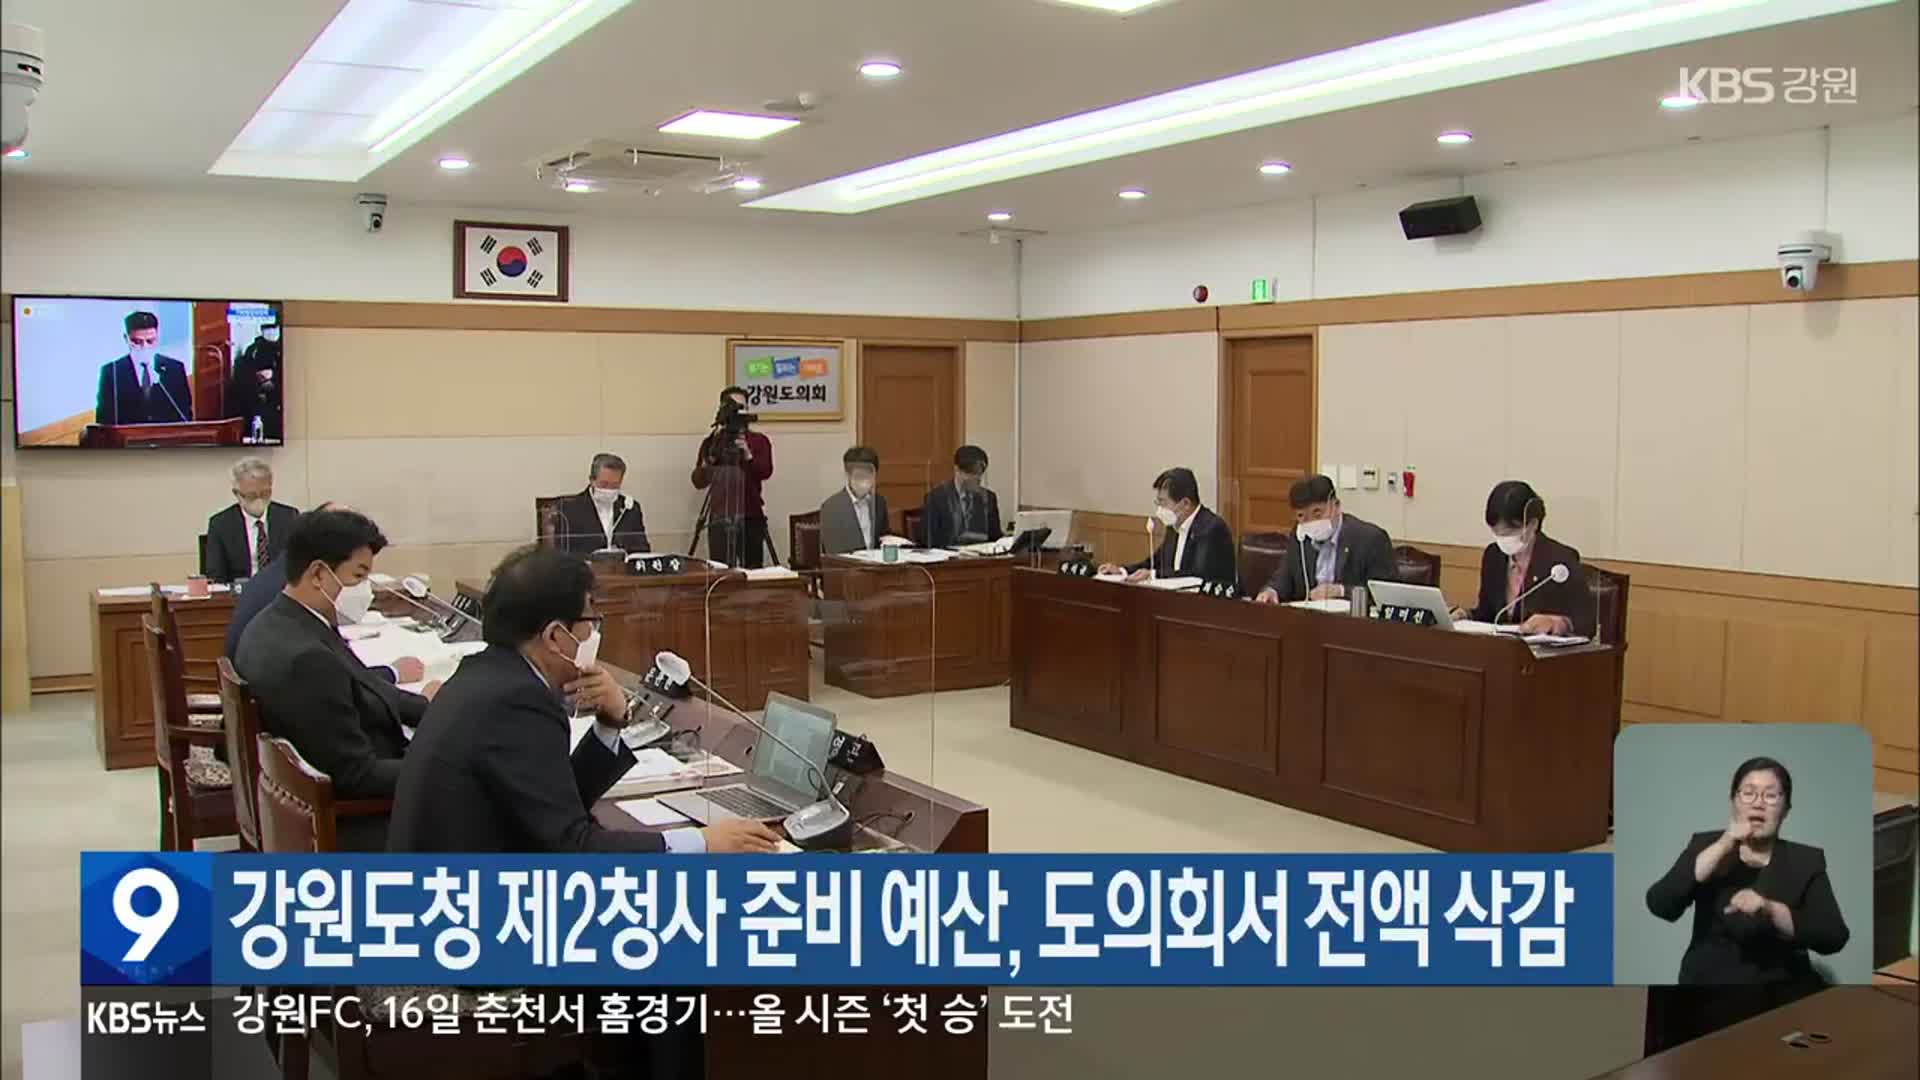 강원도청 제2청사 준비 예산, 도의회서 전액 삭감